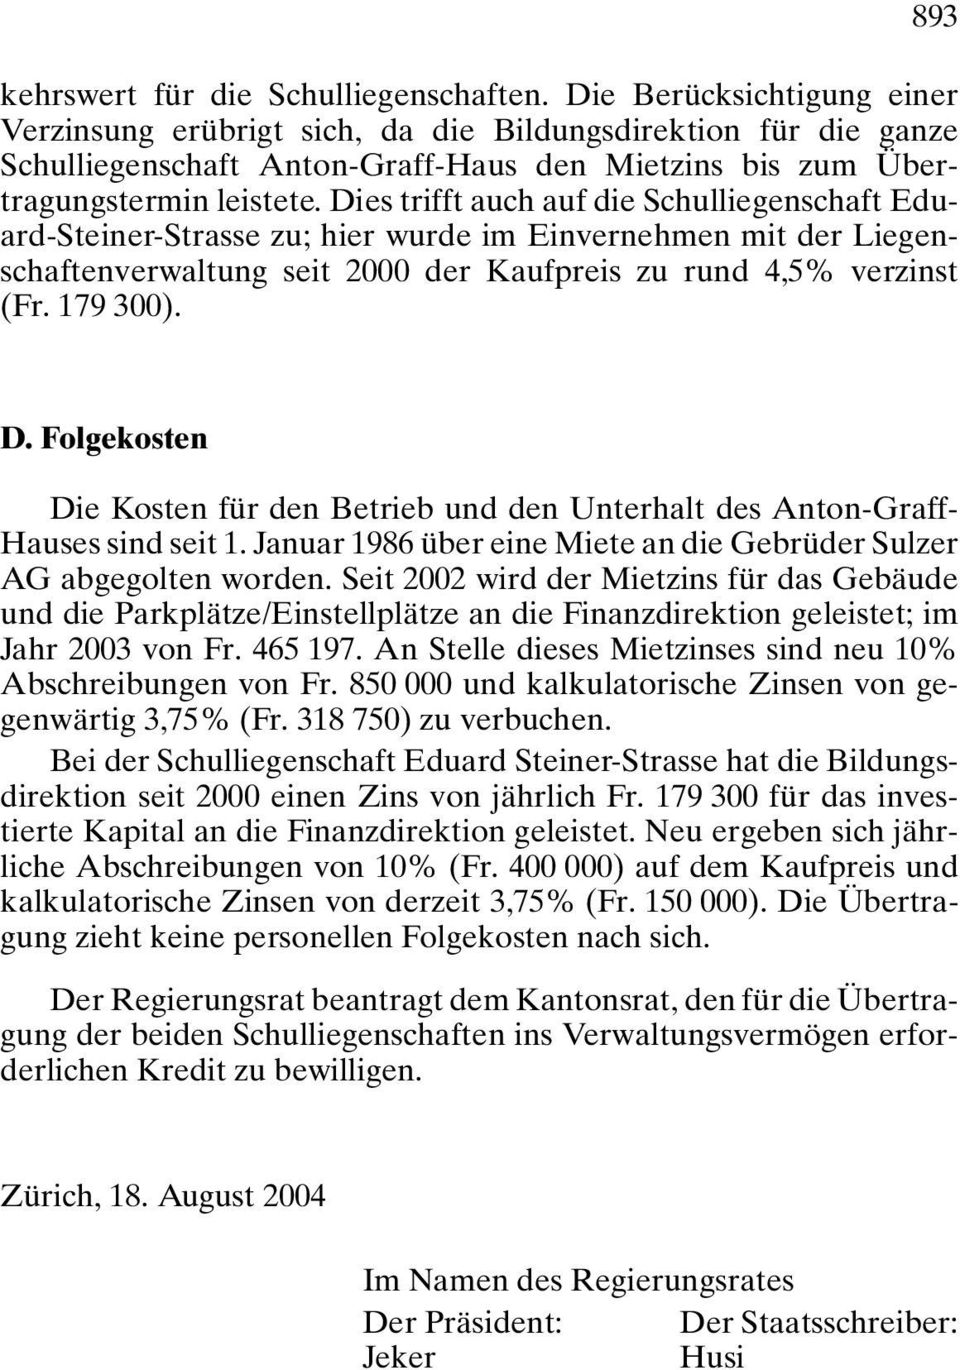 Dies trifft auch auf die Schulliegenschaft Eduard-Steiner-Strasse zu; hier wurde im Einvernehmen mit der Liegenschaftenverwaltung seit 2000 der Kaufpreis zu rund 4,5% verzinst (Fr. 179 300). D.